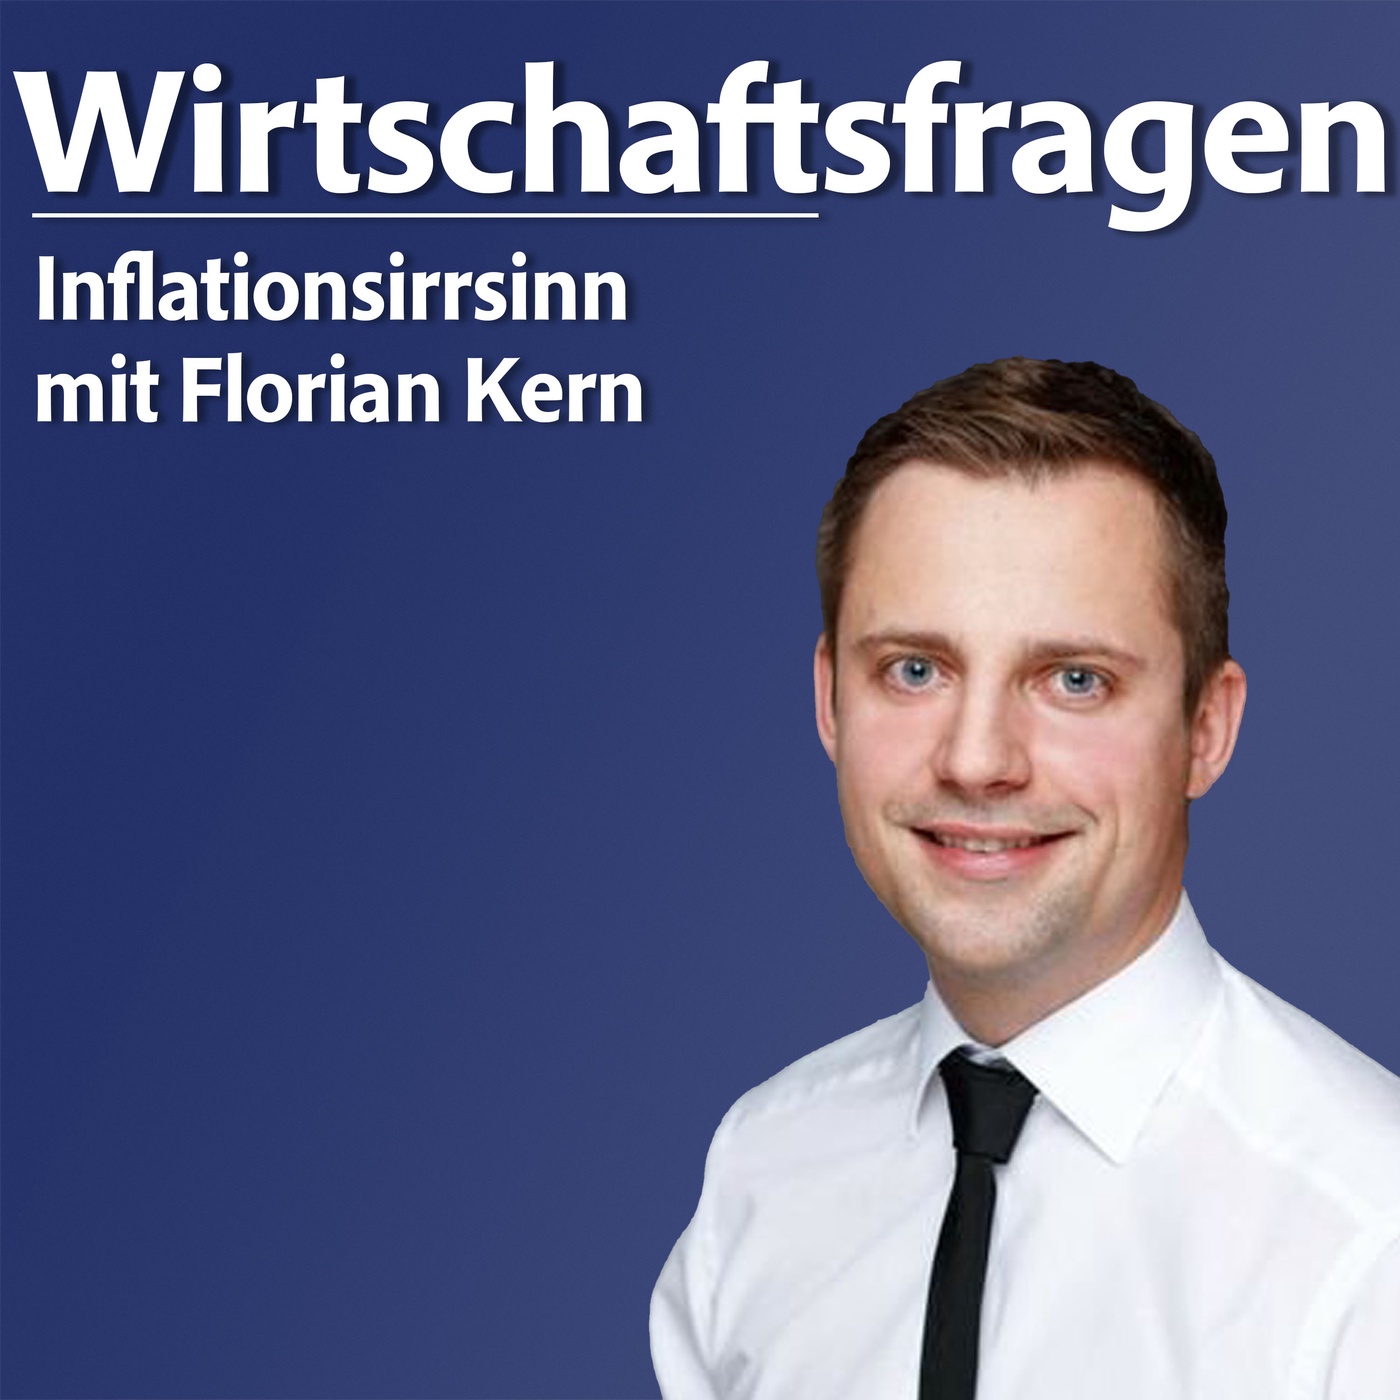 Inflationsirrsinn - mit Florian Kern